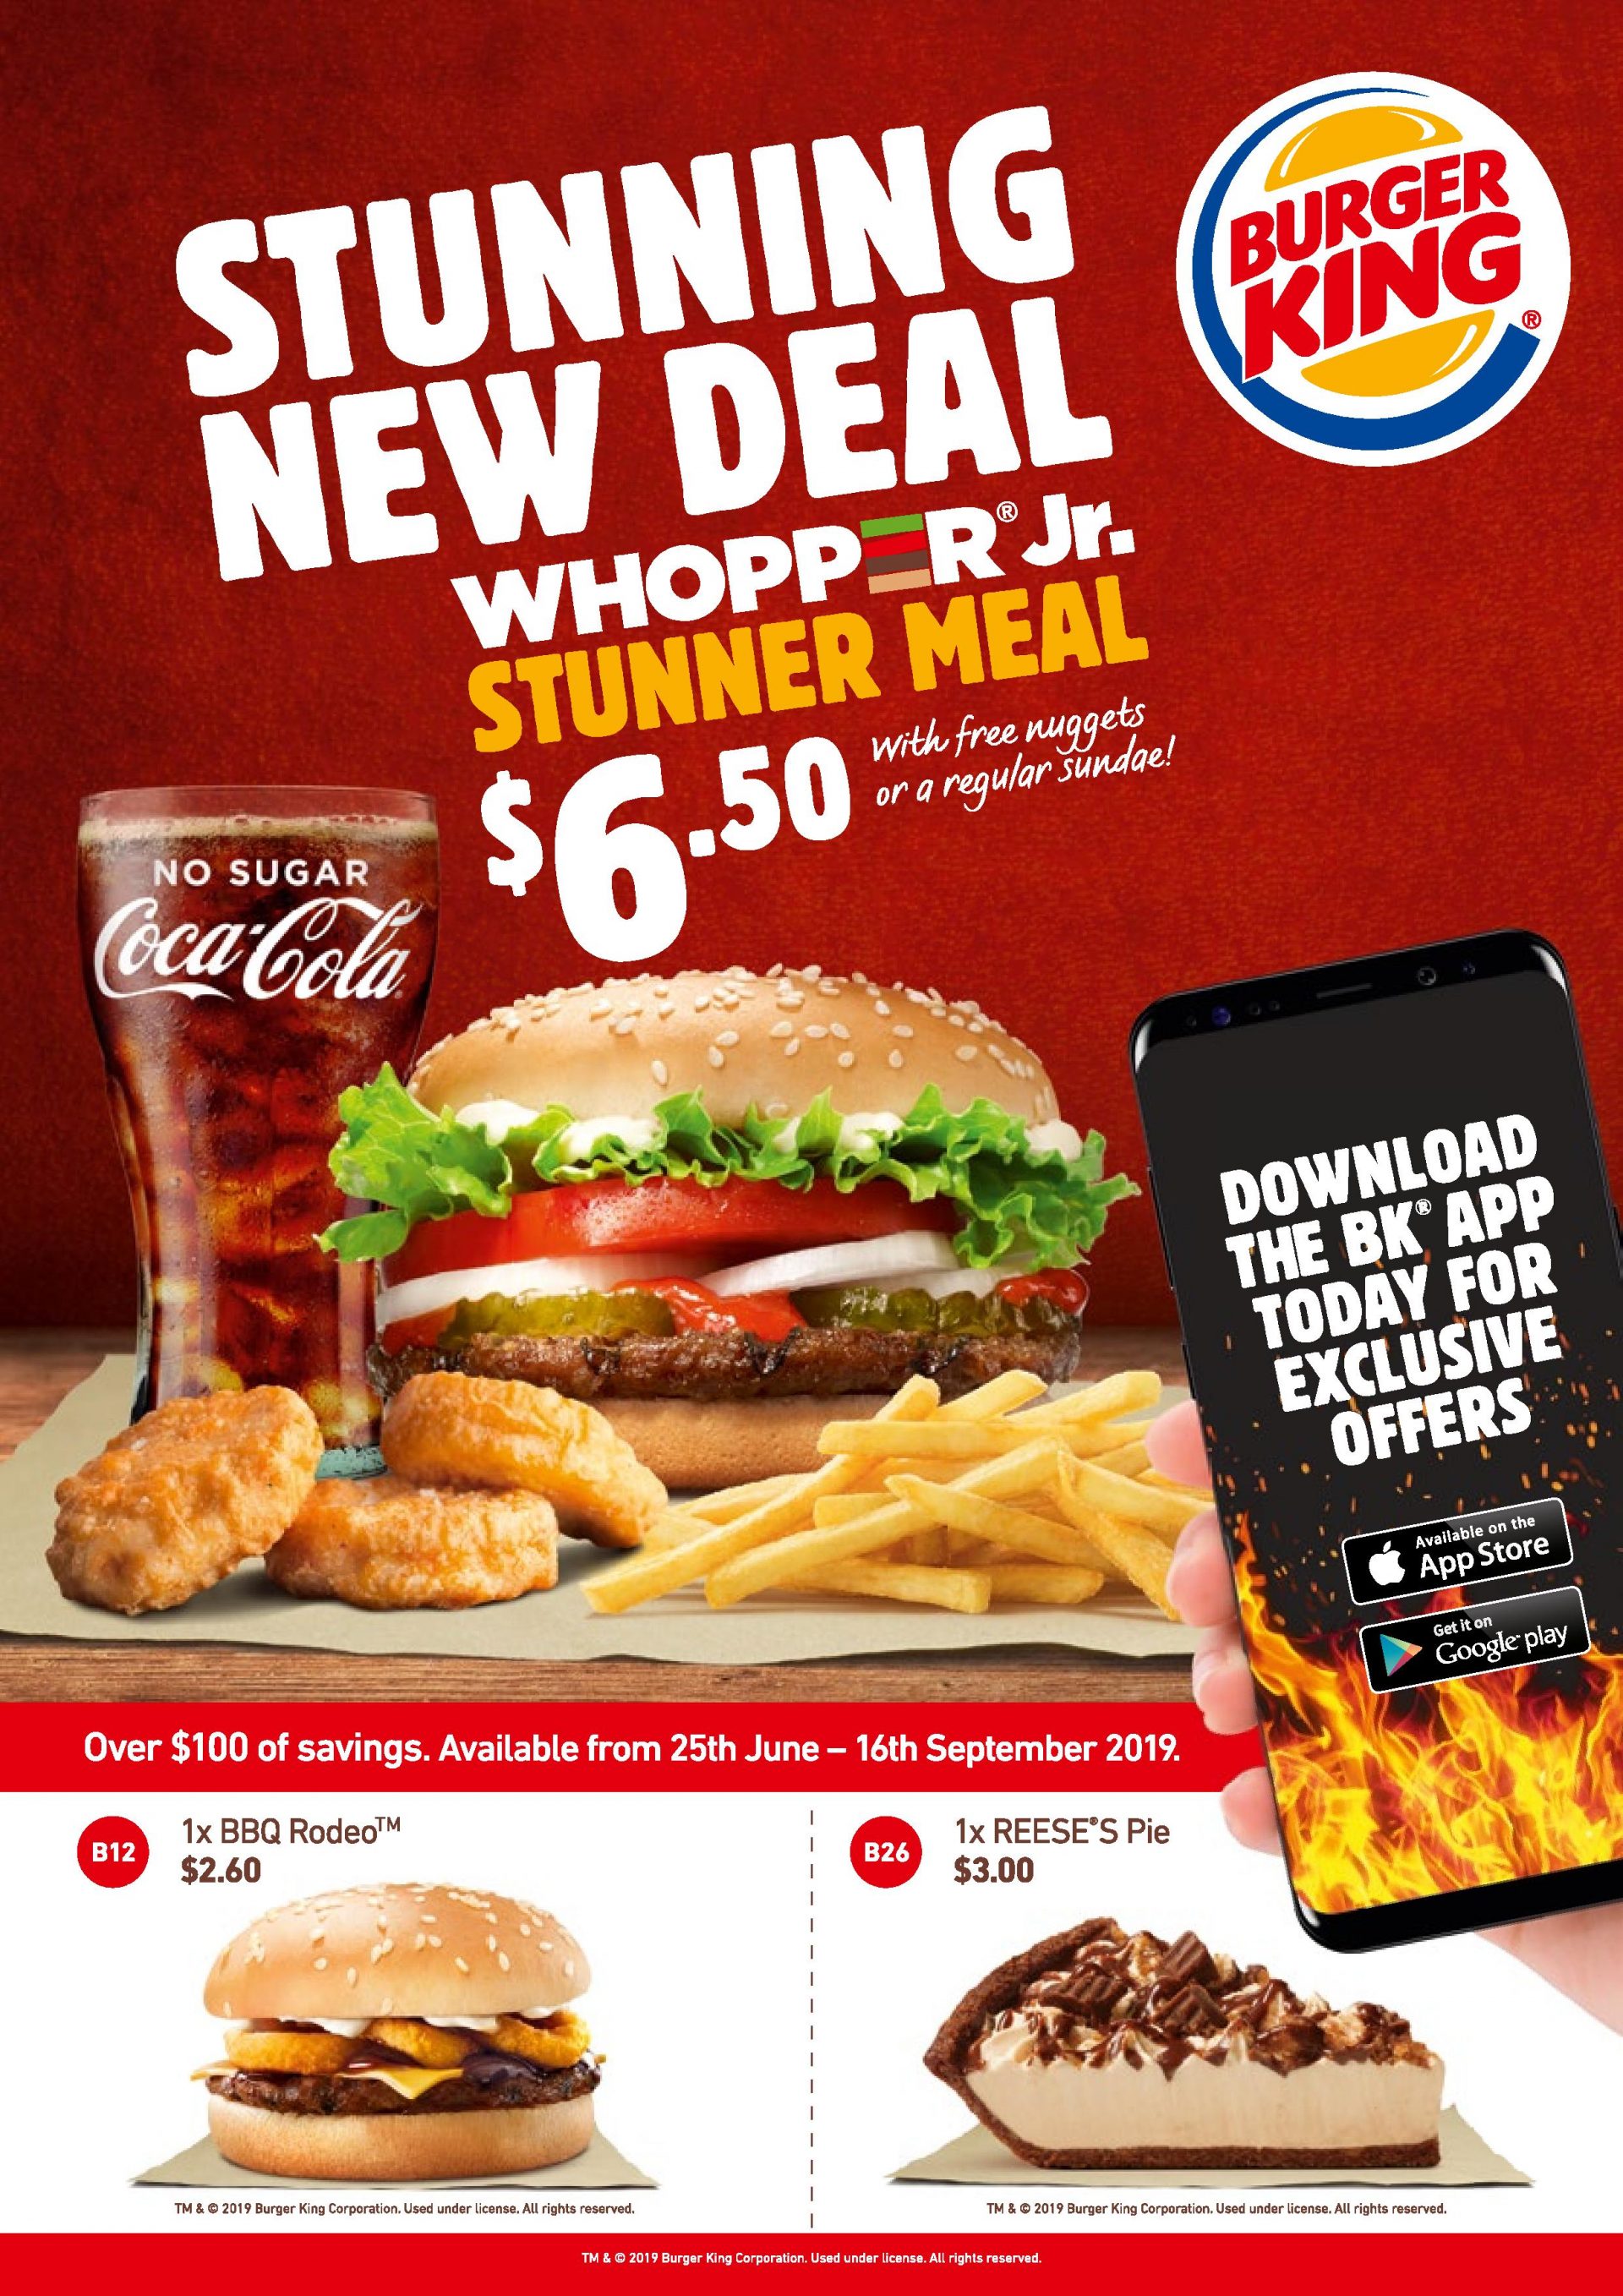 DEAL Burger King Coupons valid until 16 September 2019 frugal feeds nz